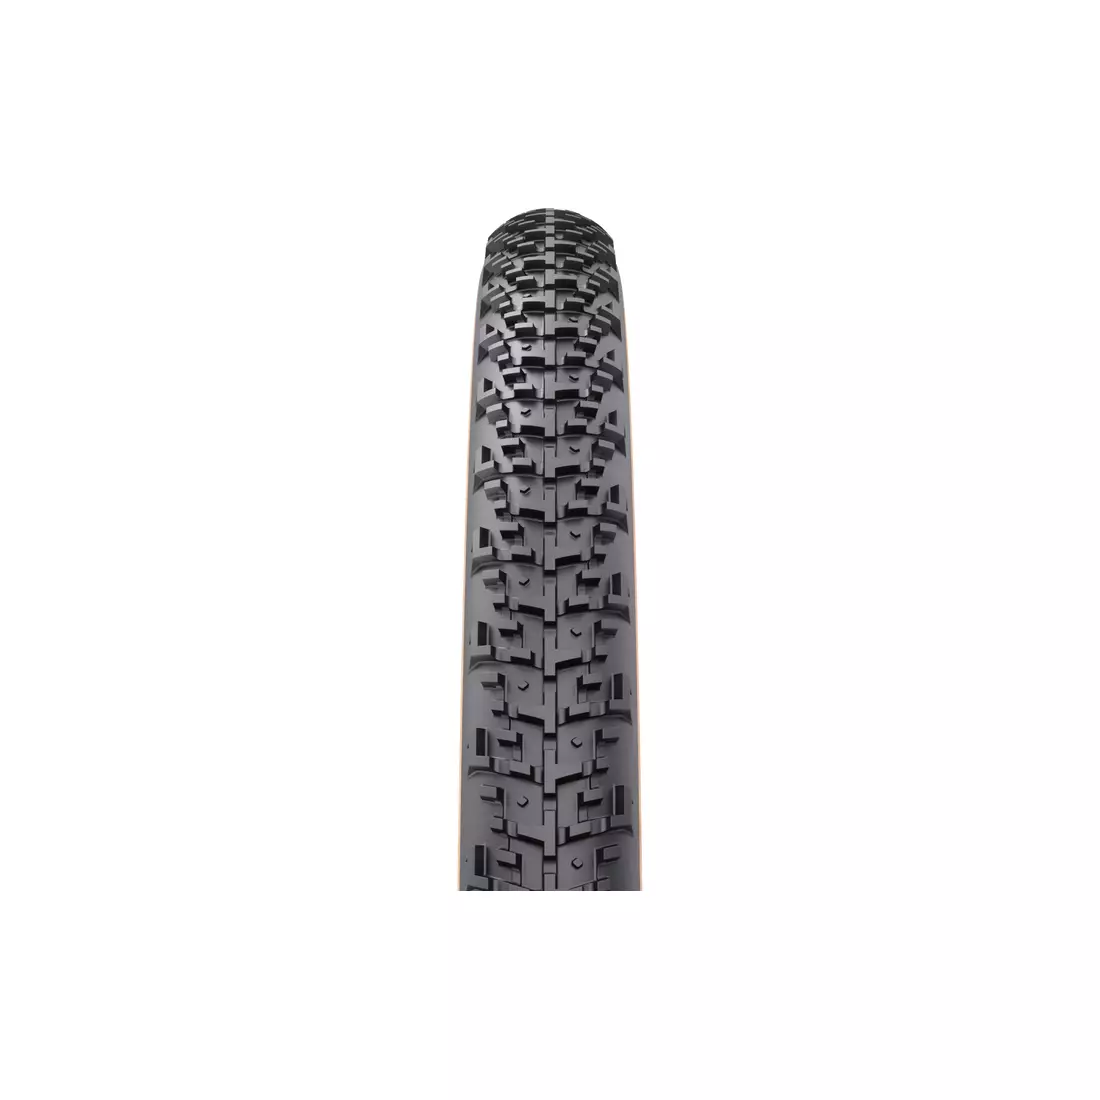 WTB NANO TCS LFR 60 TPI Bike tire 29x2,1 